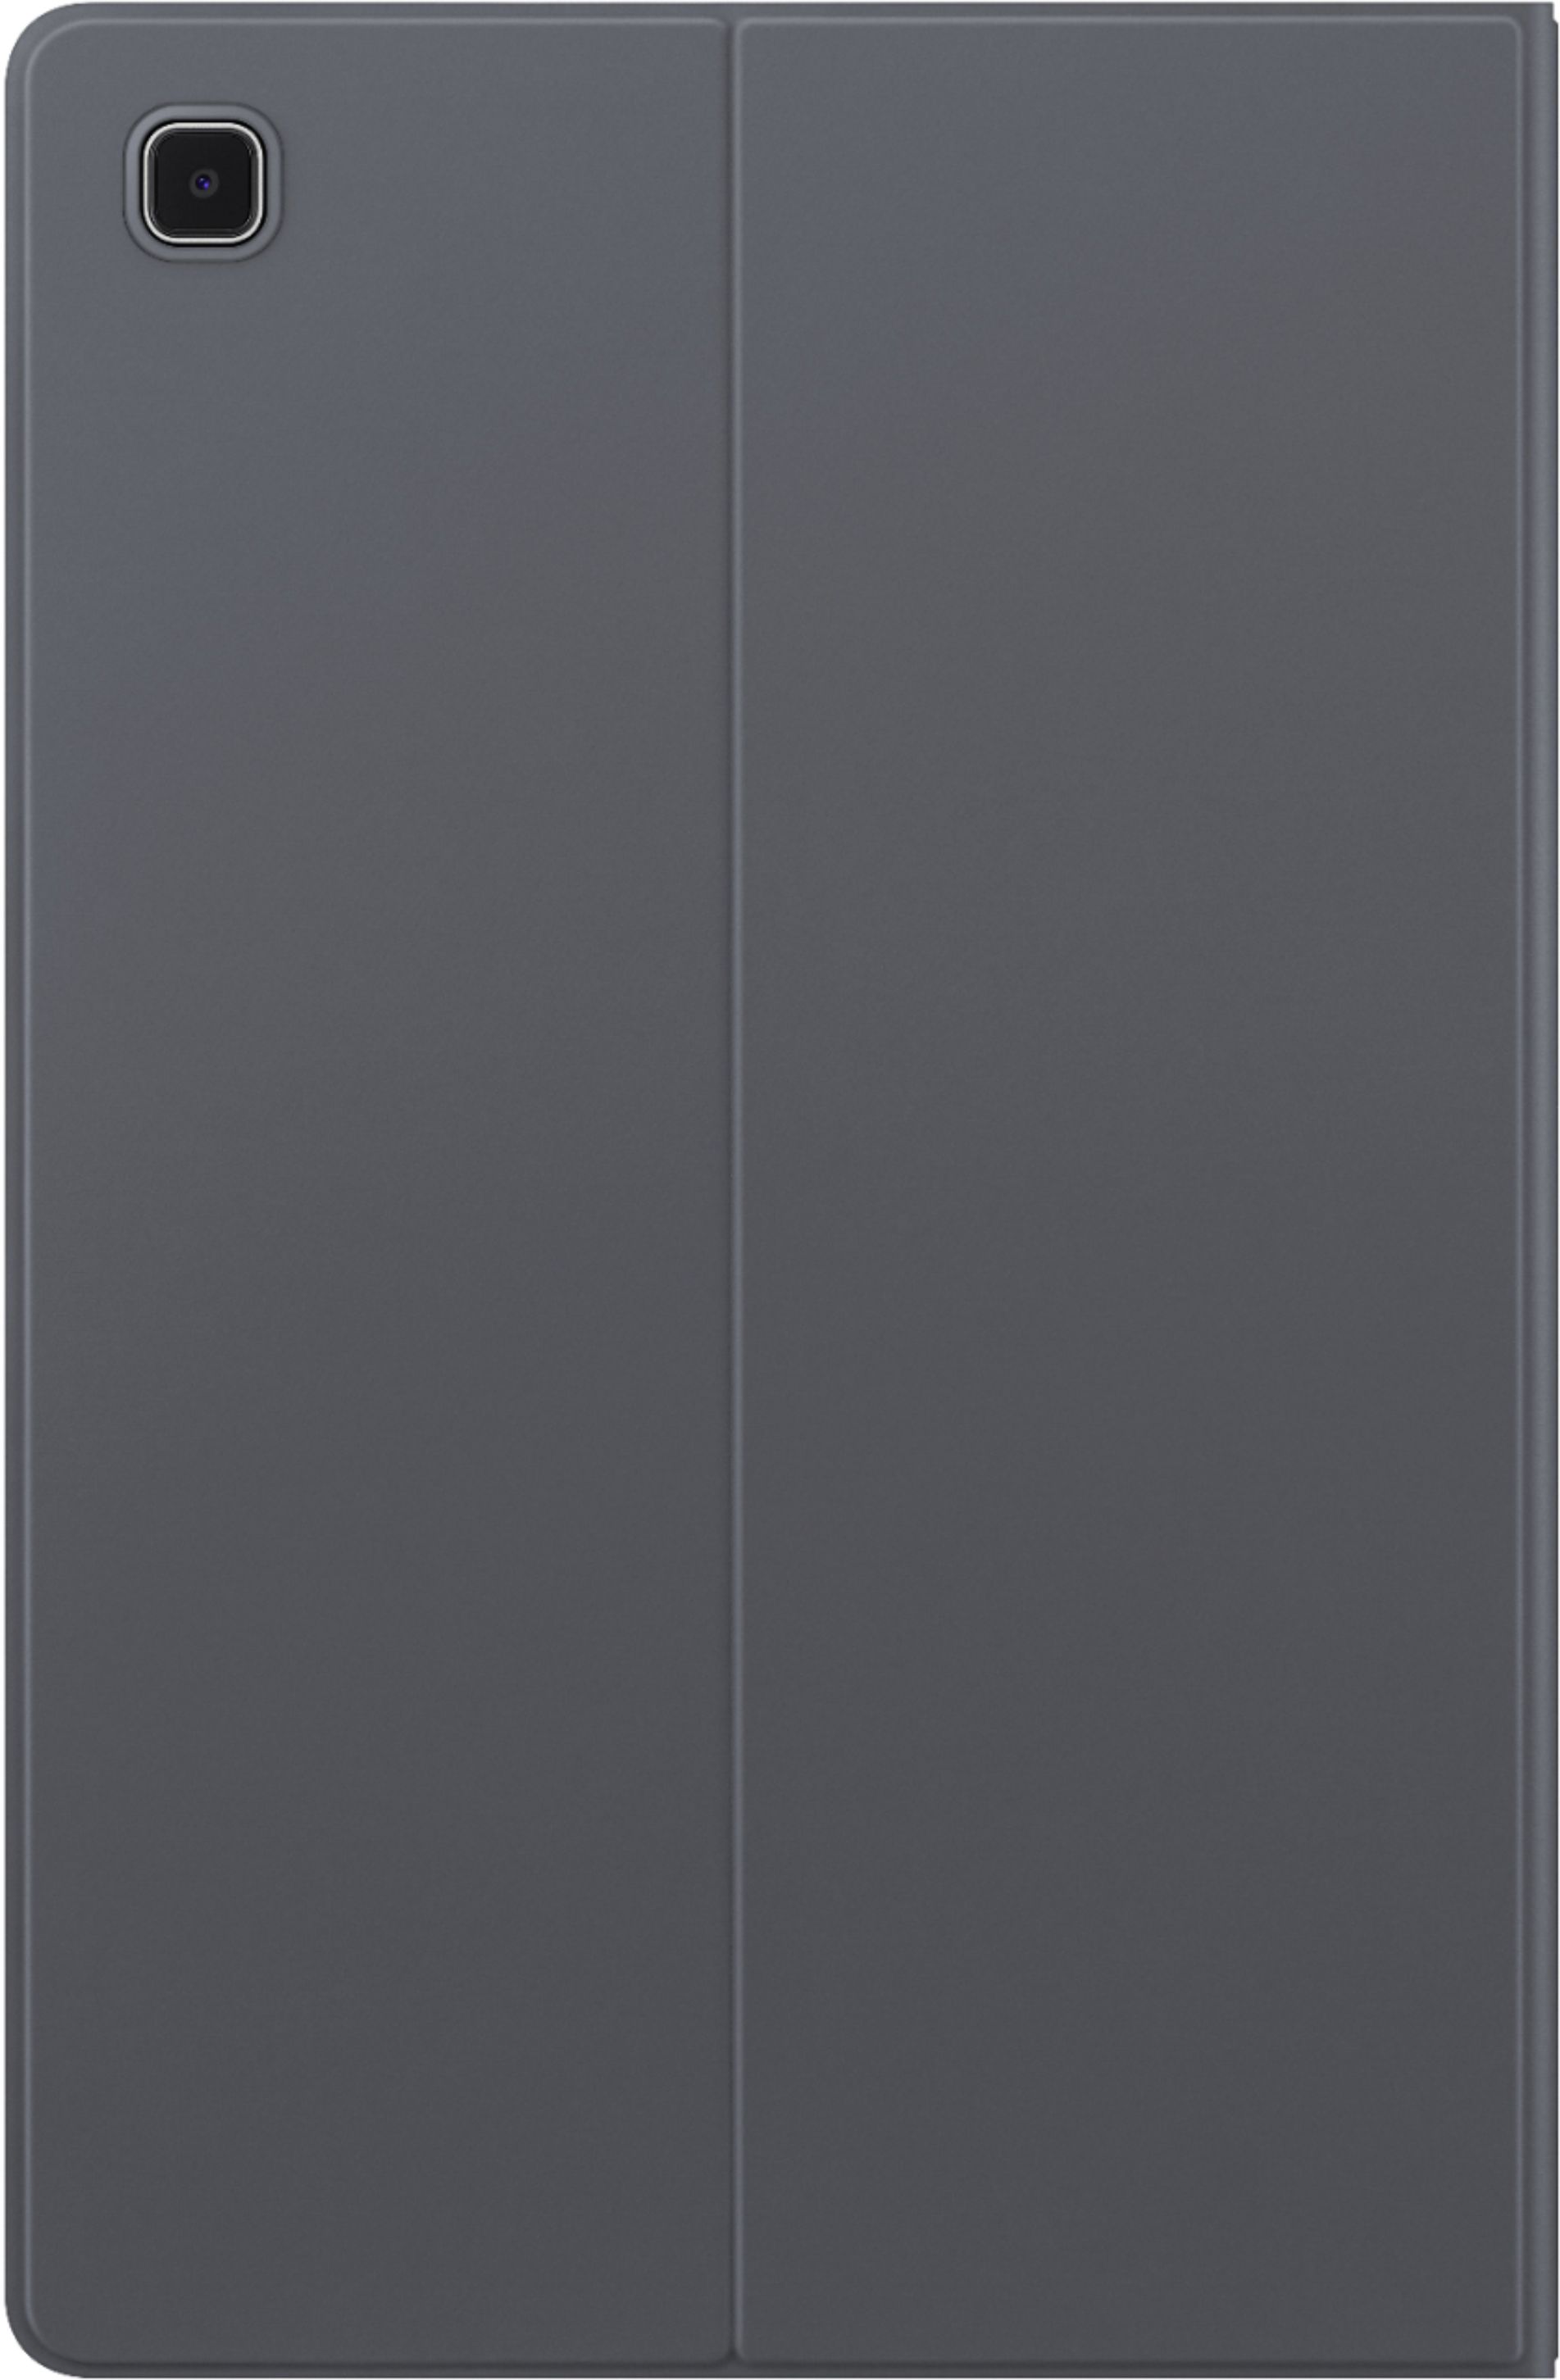 Samsung Galaxy Tab Book Grey EF-BT500PJEGUJ - Best Buy